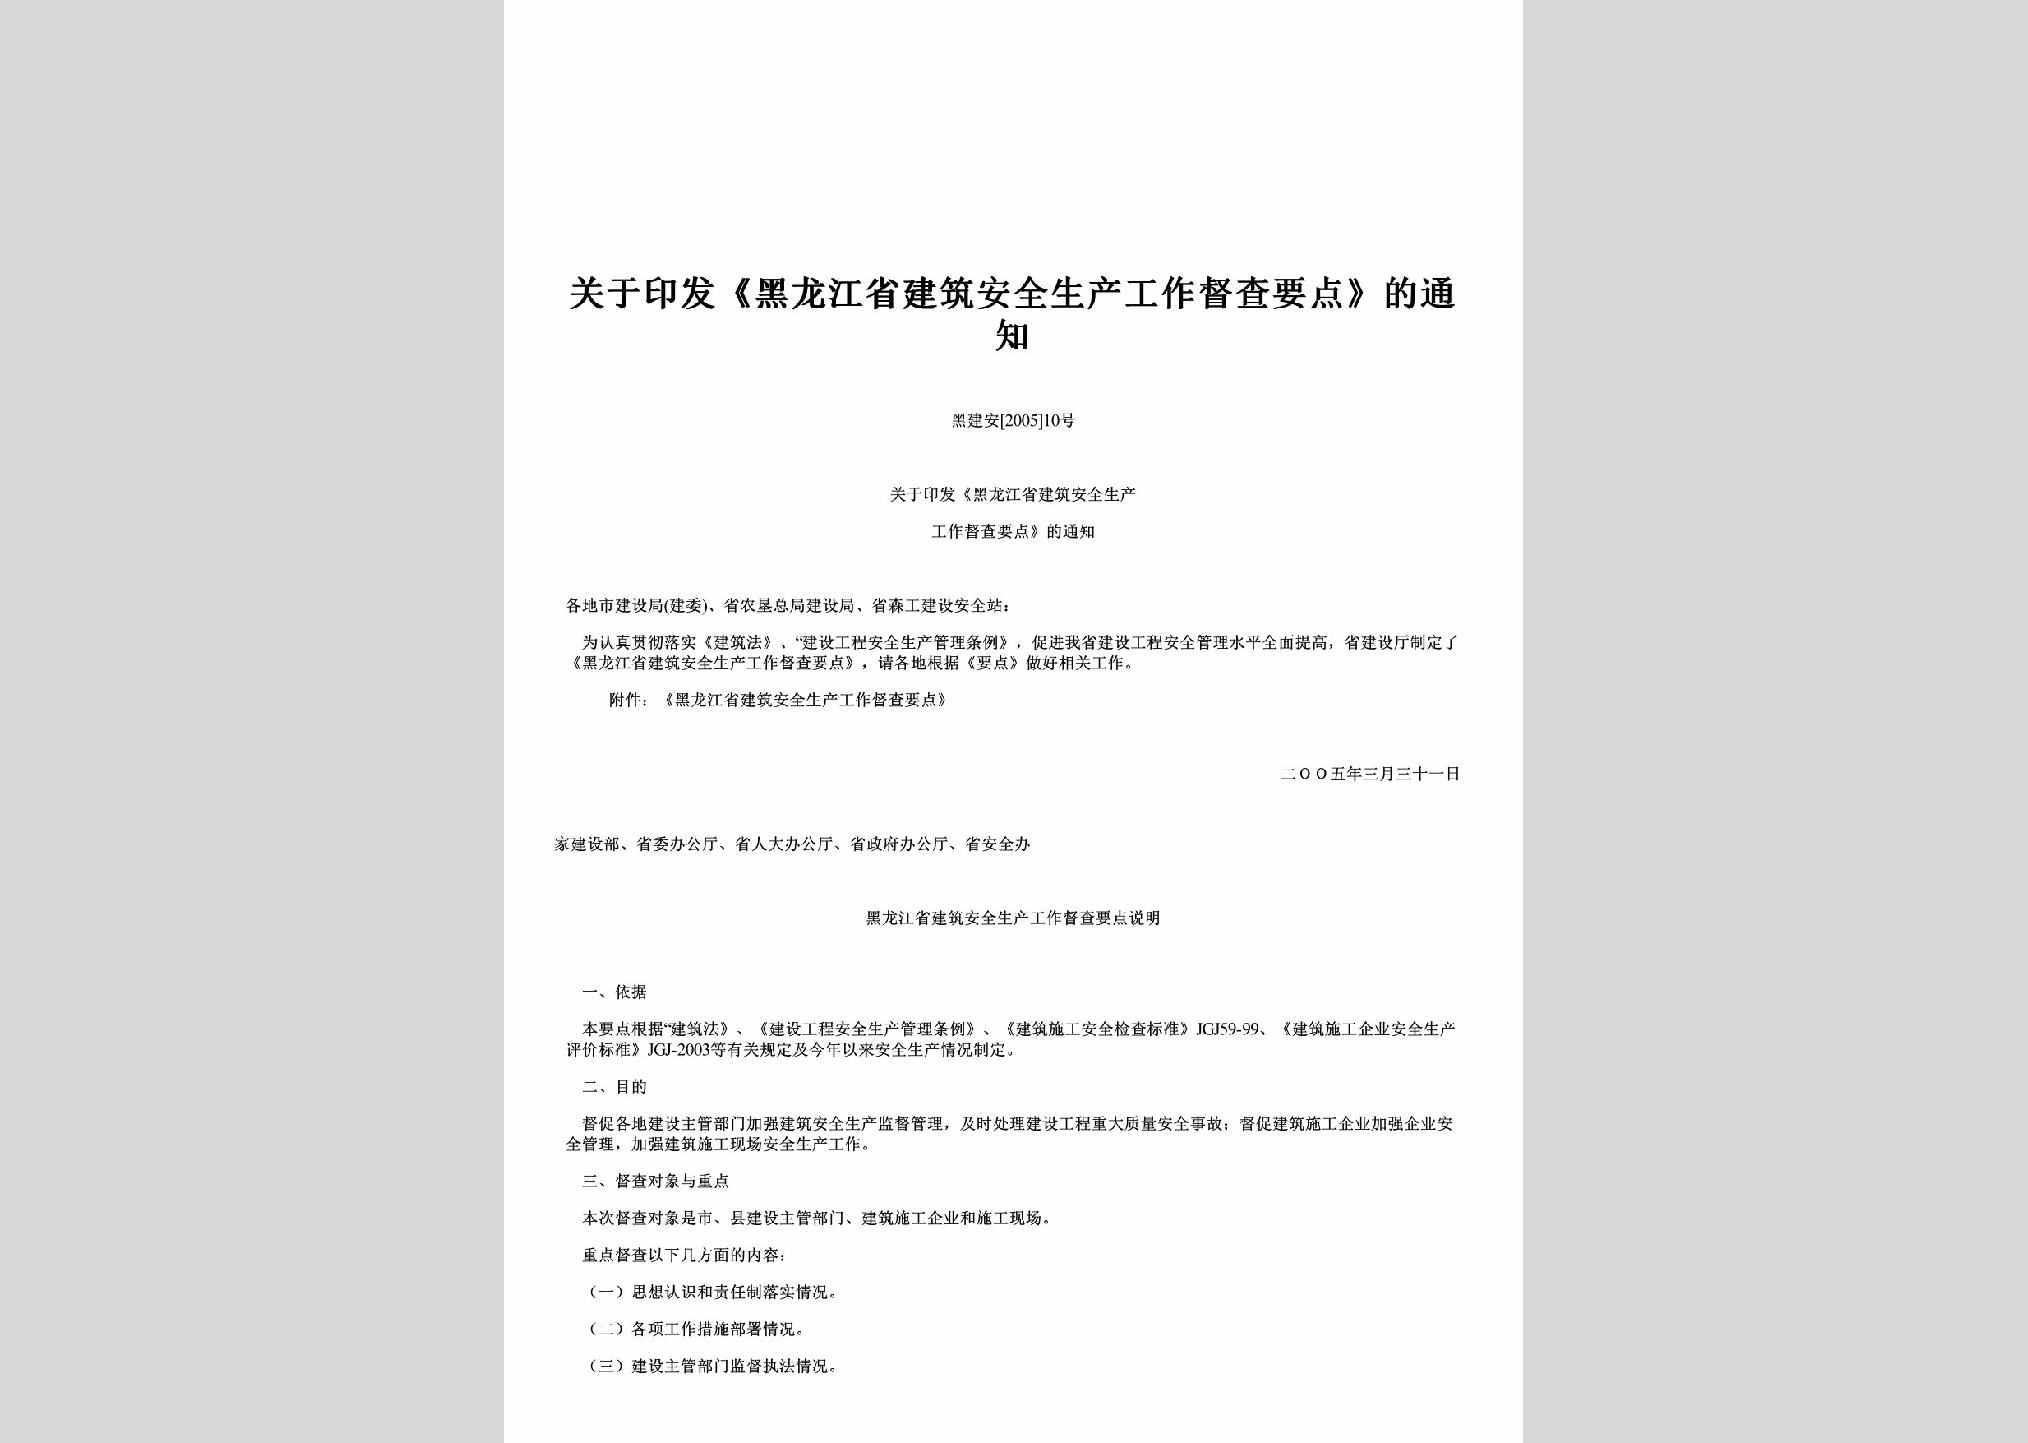 黑建安[2005]10号：关于印发《黑龙江省建筑安全生产工作督查要点》的通知